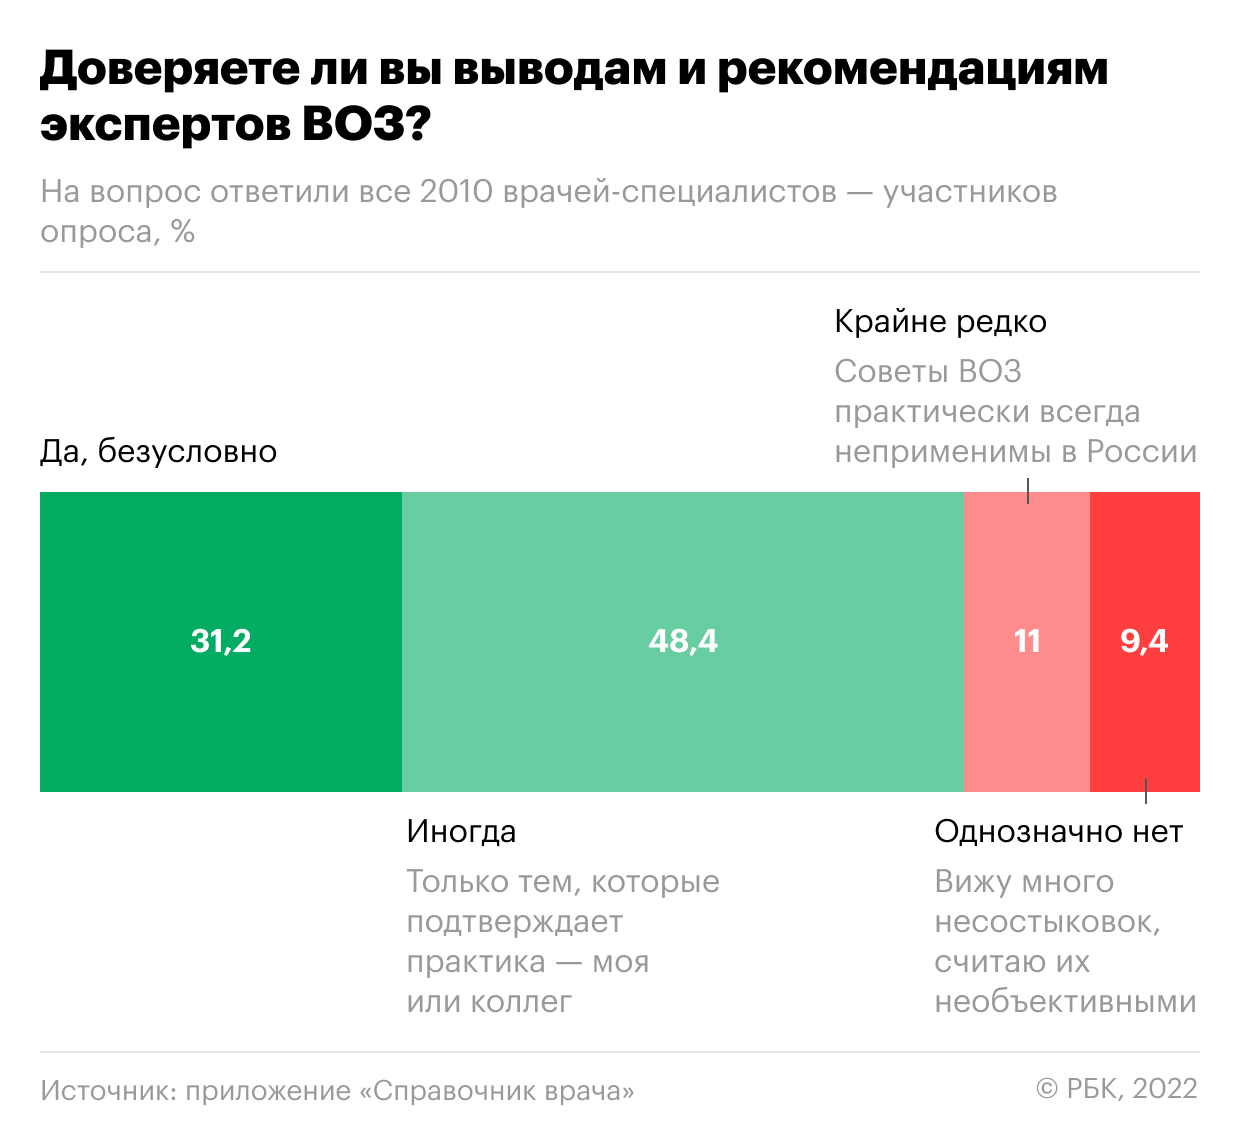 Как врачи в России относятся к выводам ВОЗ. Инфографика